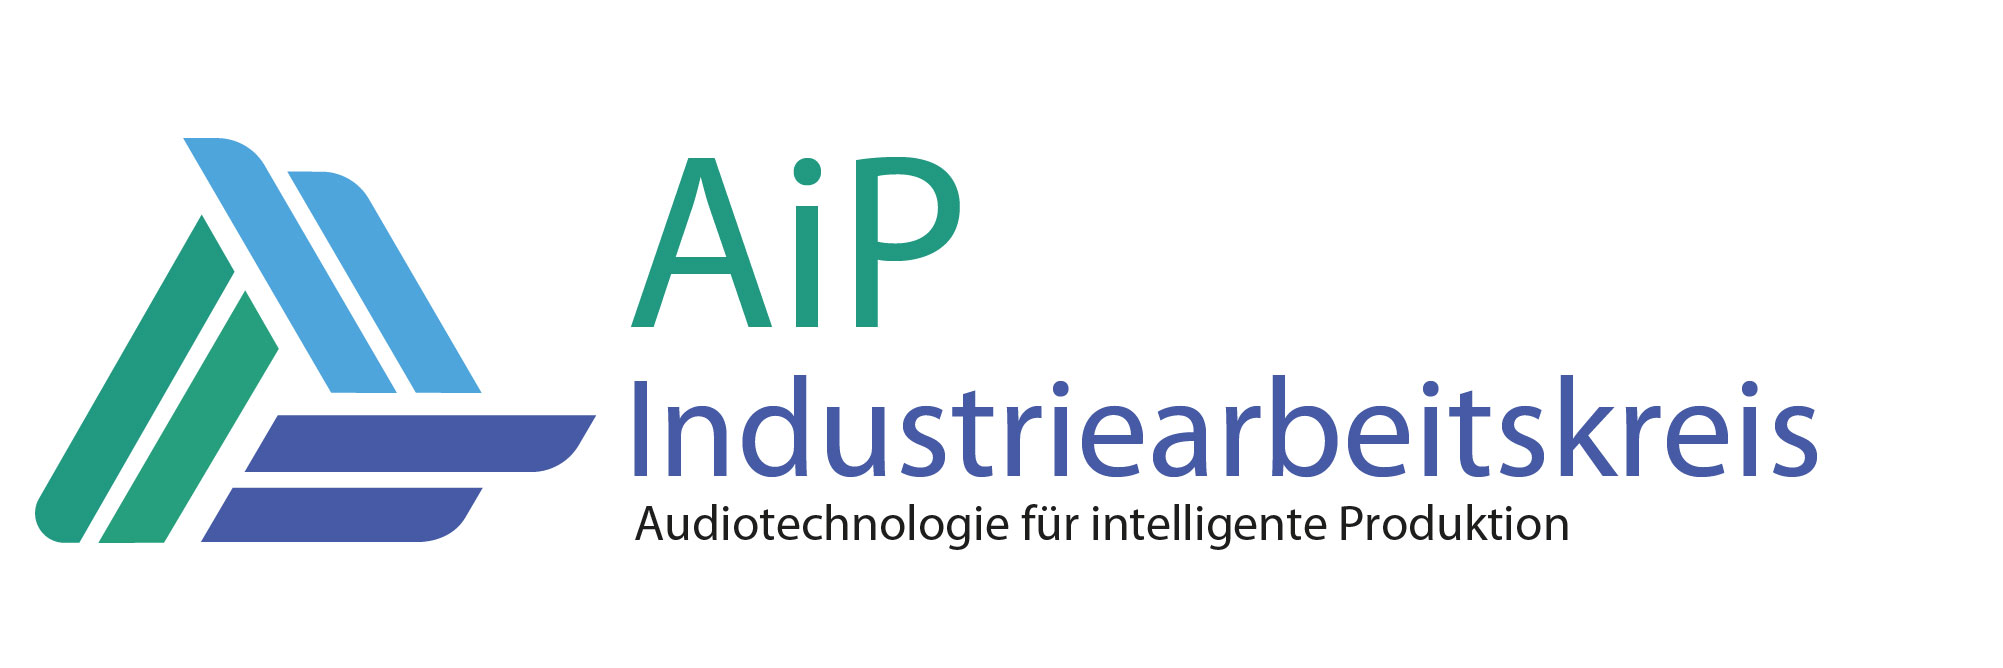 Maschinen das hören beibringen – das ist das Ziel des Oldenburger Institutsteils für Hör-, Sprach- und Audiotechnologie des Fraunhofer IDMT und der Hochschule Emden/Leer. Bild: Fraunhofer IDMT.